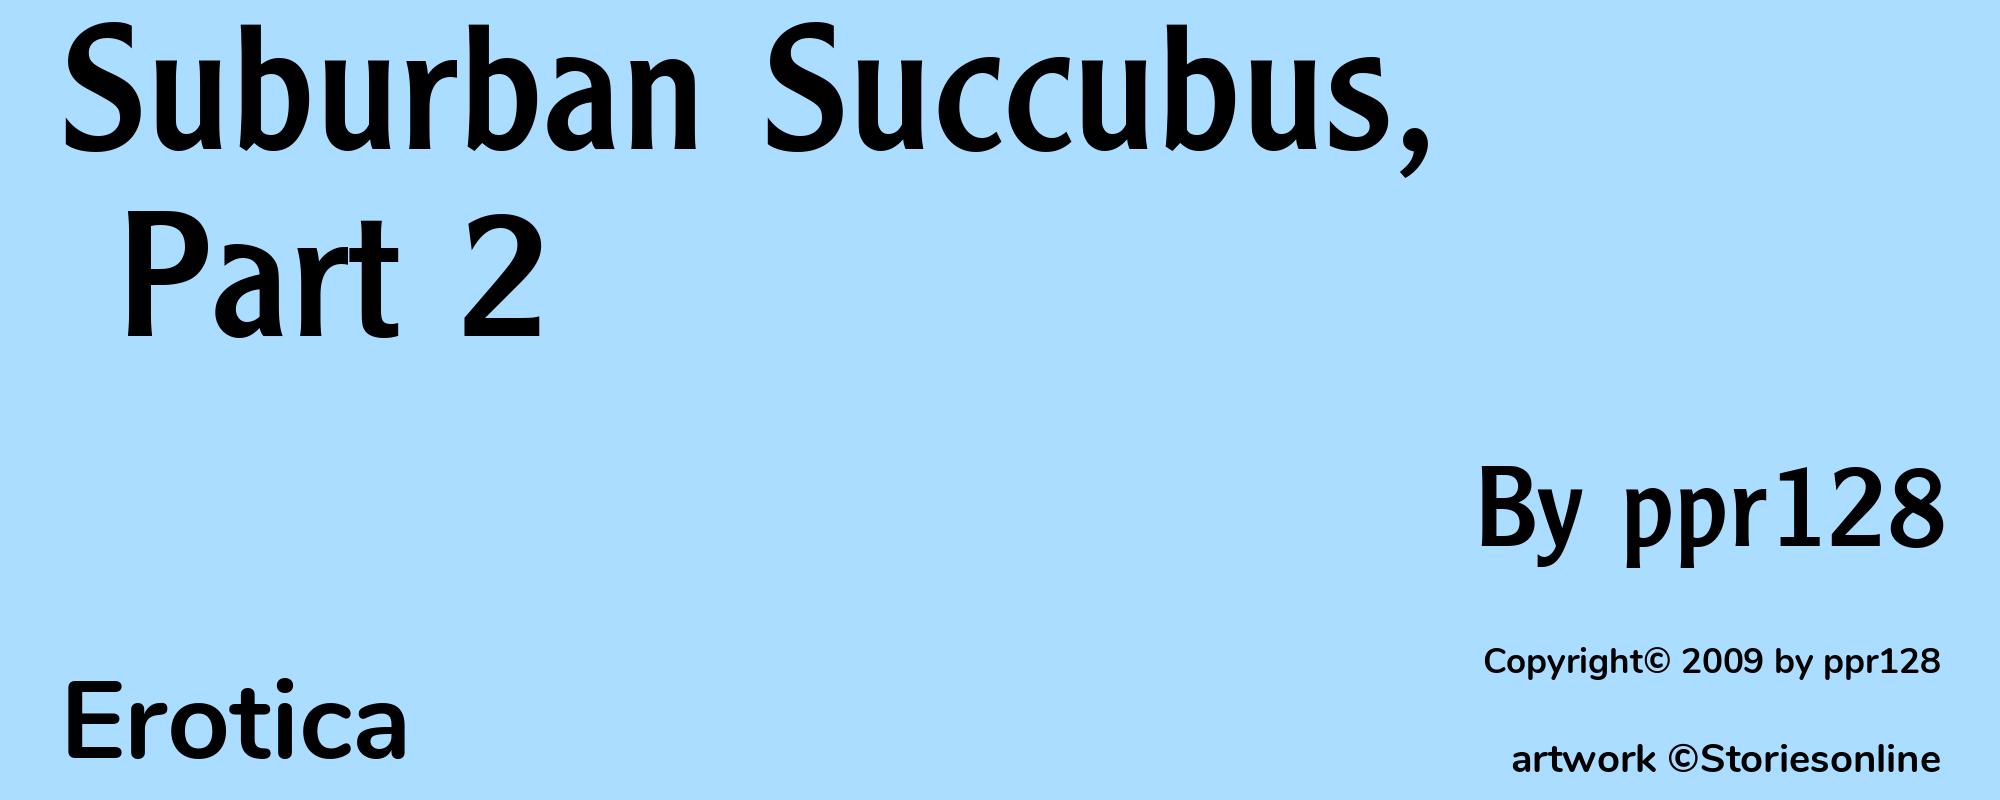 Suburban Succubus, Part 2 - Cover